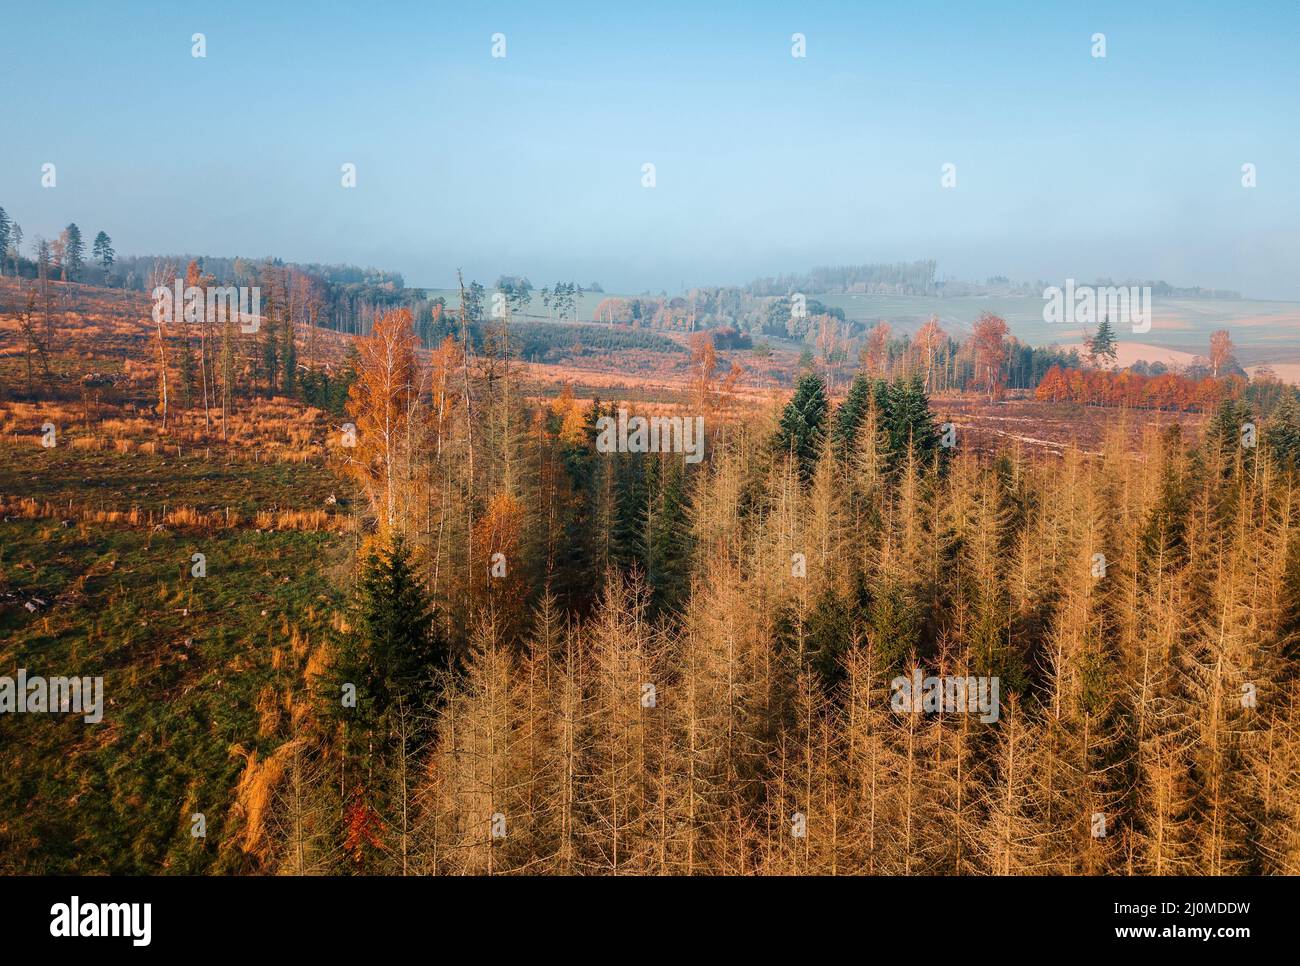 Vue aérienne de la campagne d'automne, paysage d'automne traditionnel en europe centrale Banque D'Images